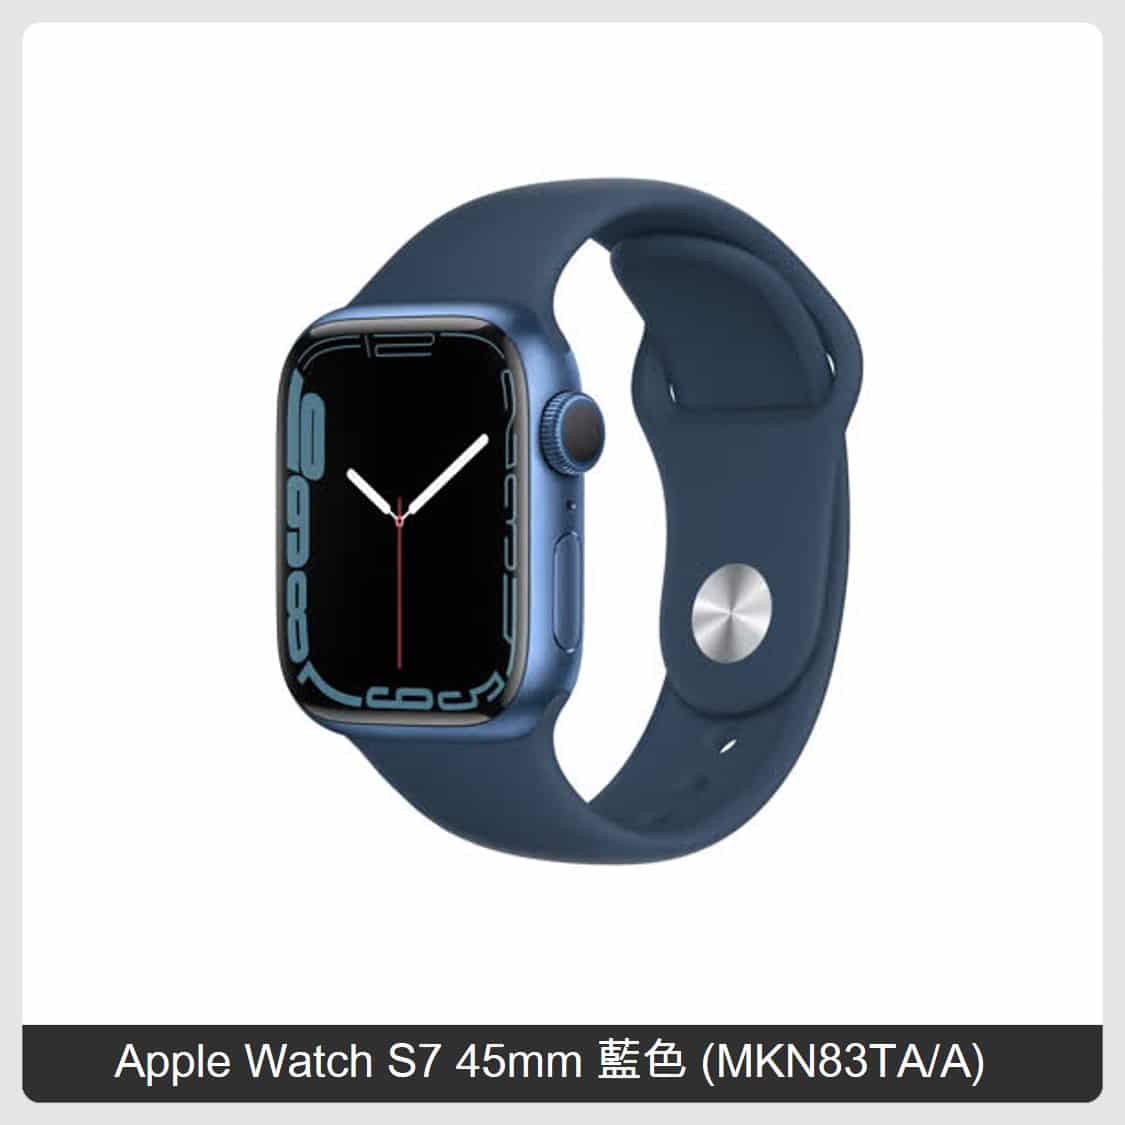 Apple Watch S7 45mm 藍色(MKN83TA/A)